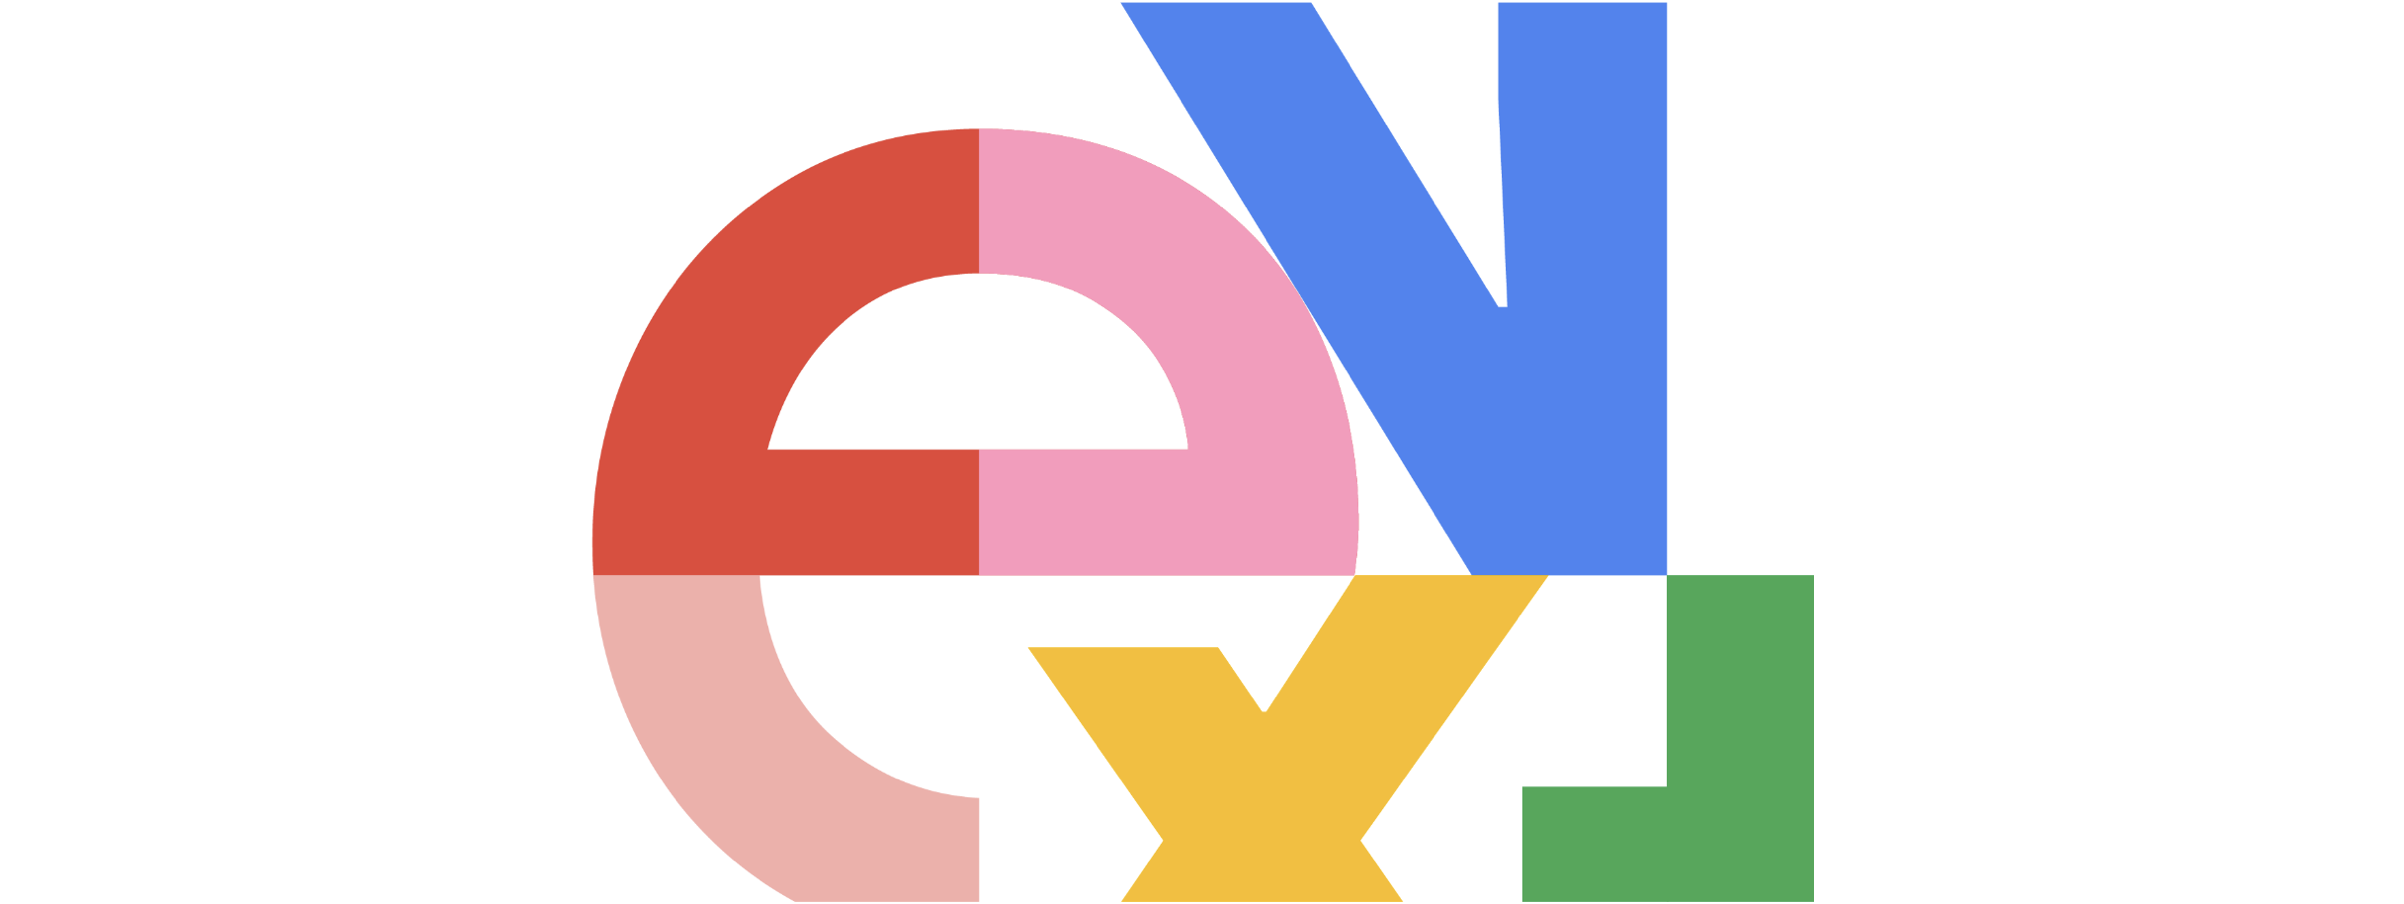 概要 - Google Cloud Next Tokyo '23